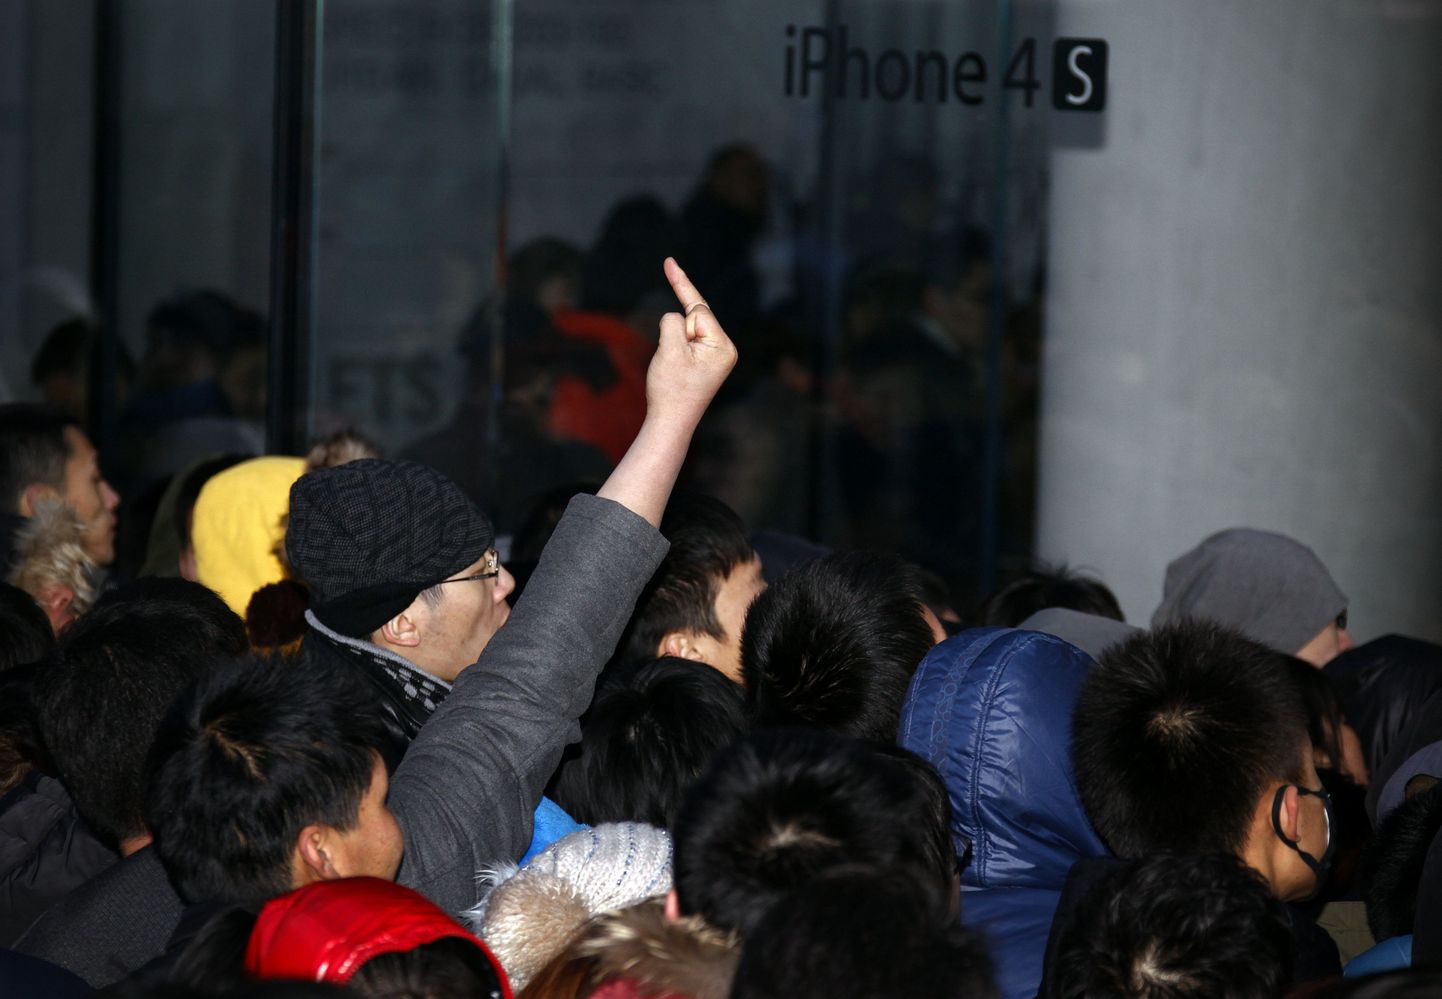 iPhone 4Si müügile jõudmine vallandas Pekingis tõelise ostuhulluse, mille ohjamiseks oli vaja sekkuda kohalikul politseil.